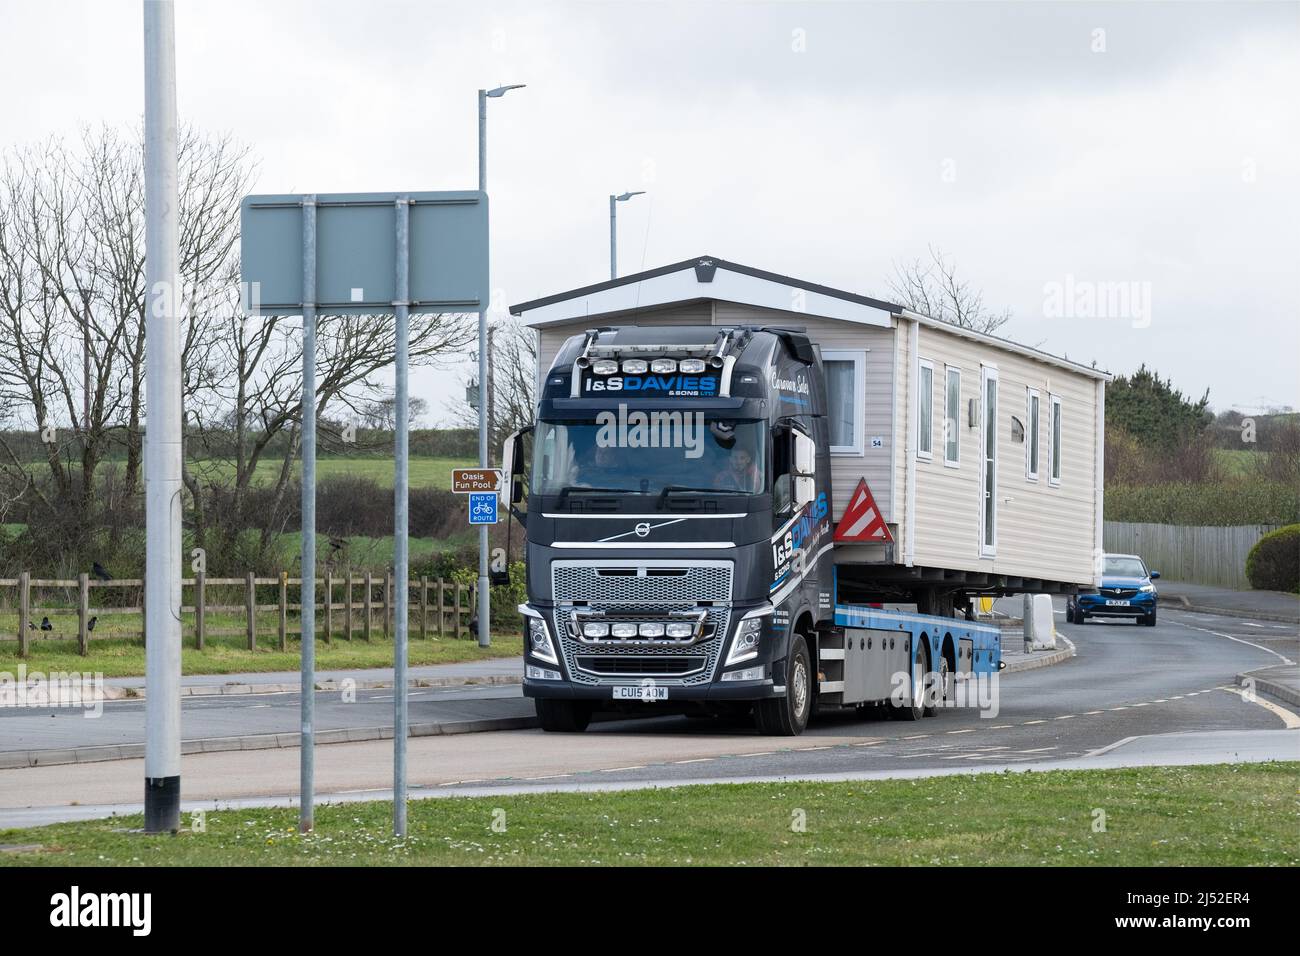 Ein LKW, der eine breite Ladung auf einer britischen A-Straße transportiert, ist abgebildet. Die abnorme oder breite Last ist ein Wohnmobil, das auf der Straße zu einem neuen Ziel gebracht wird Stockfoto